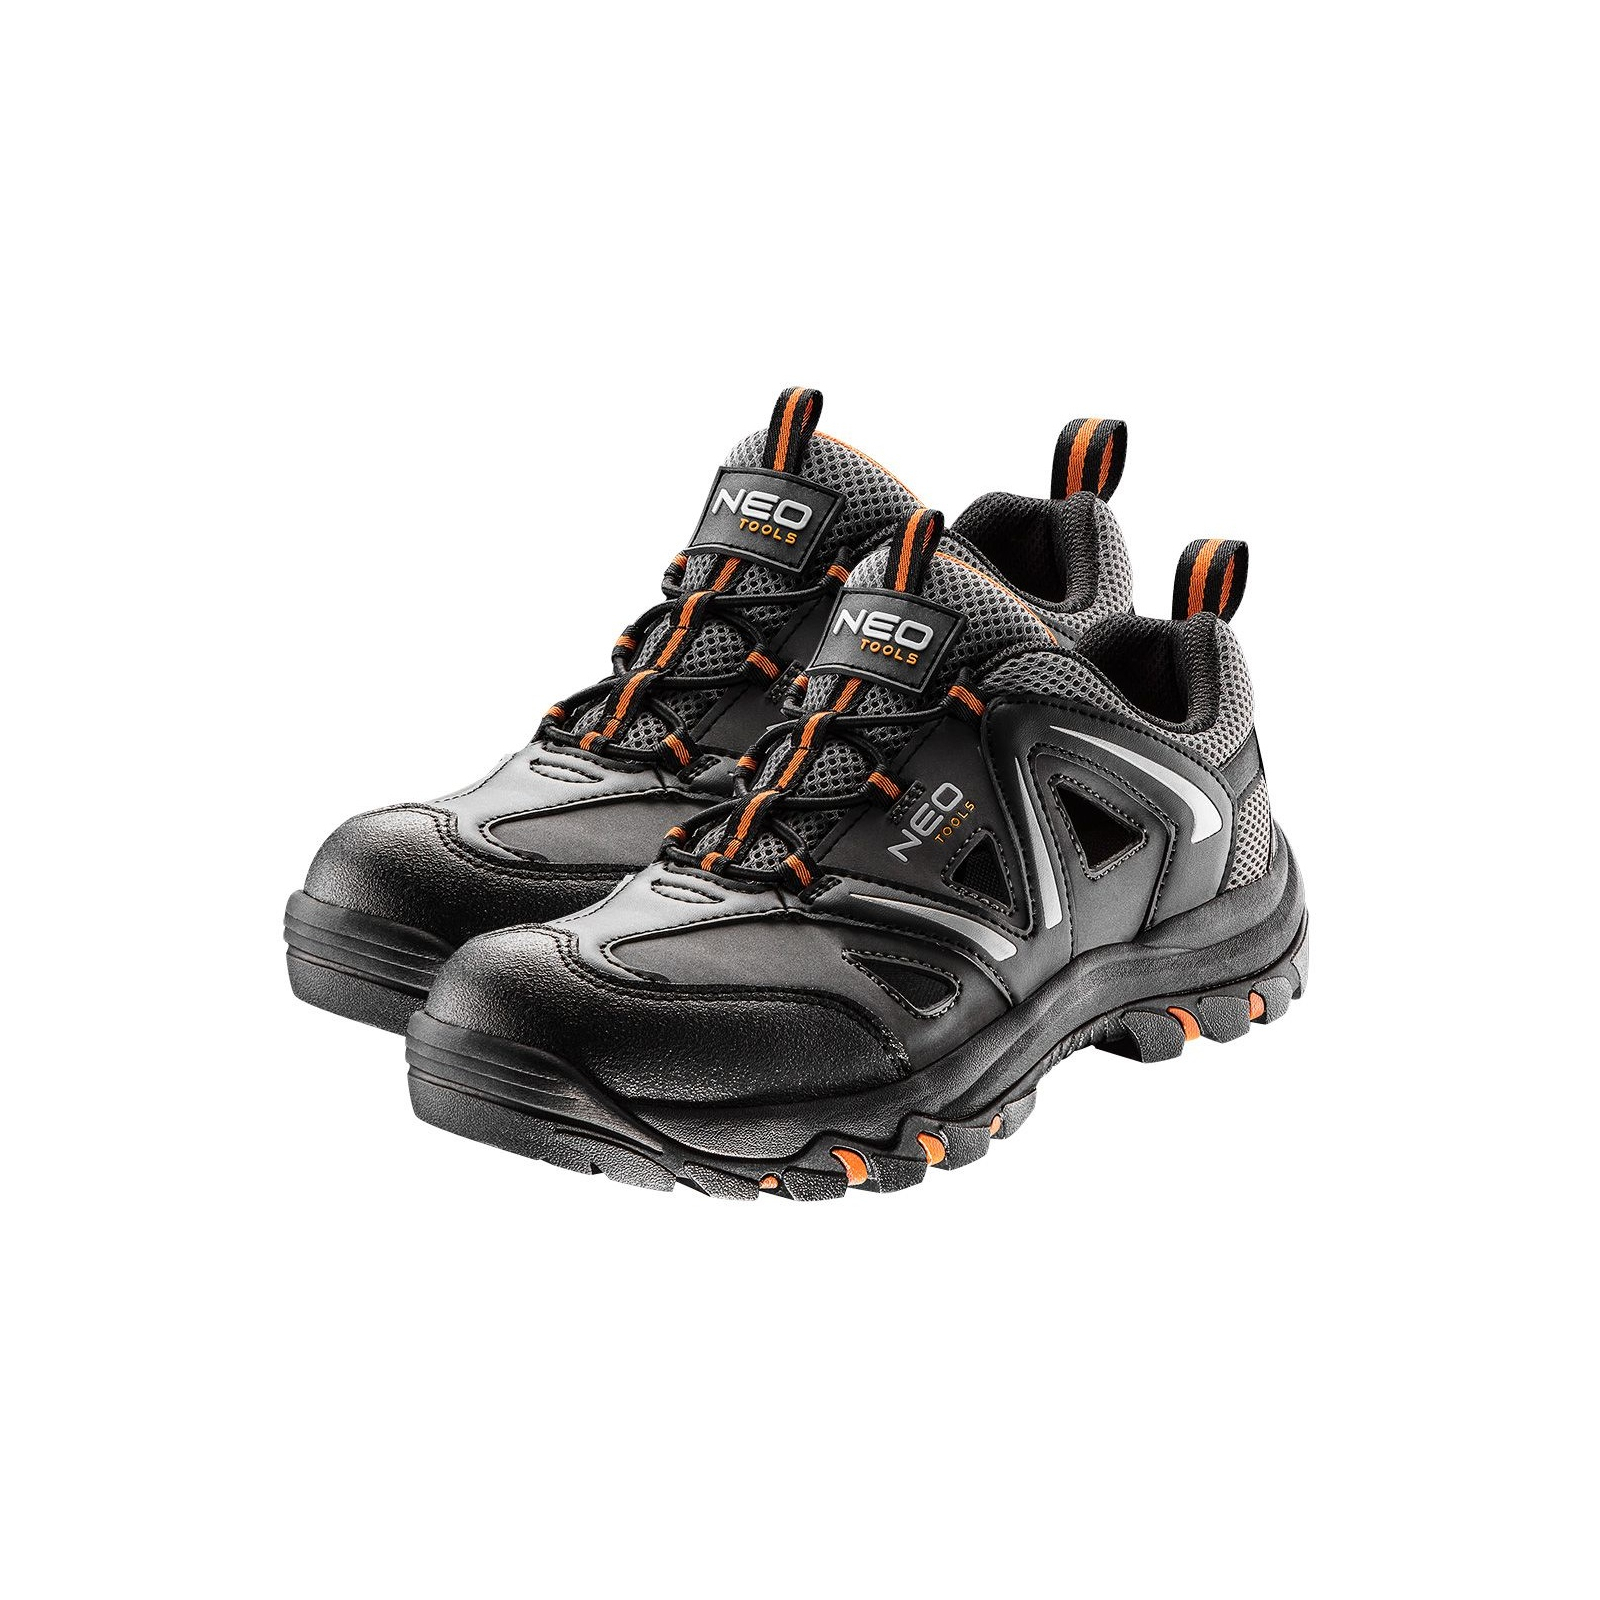 Ботинки рабочие Neo Tools кроссовки дышащие, подошва EVA, класс защиты OB, SRA, р.42 (82-723)